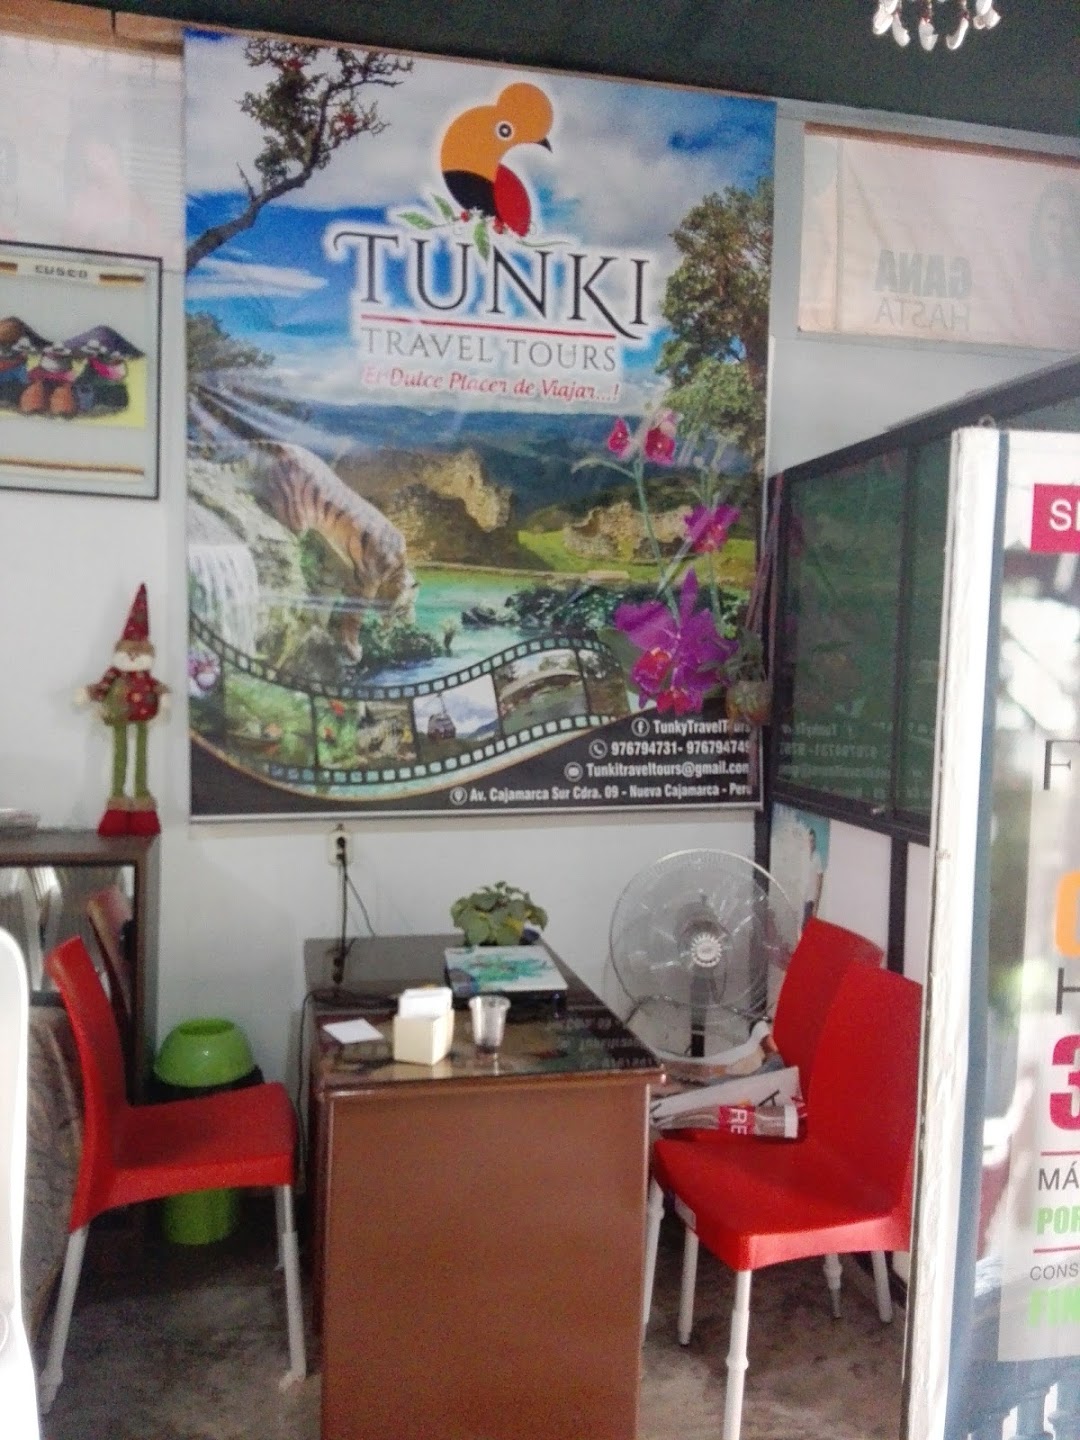 TUNKI Travel Tours